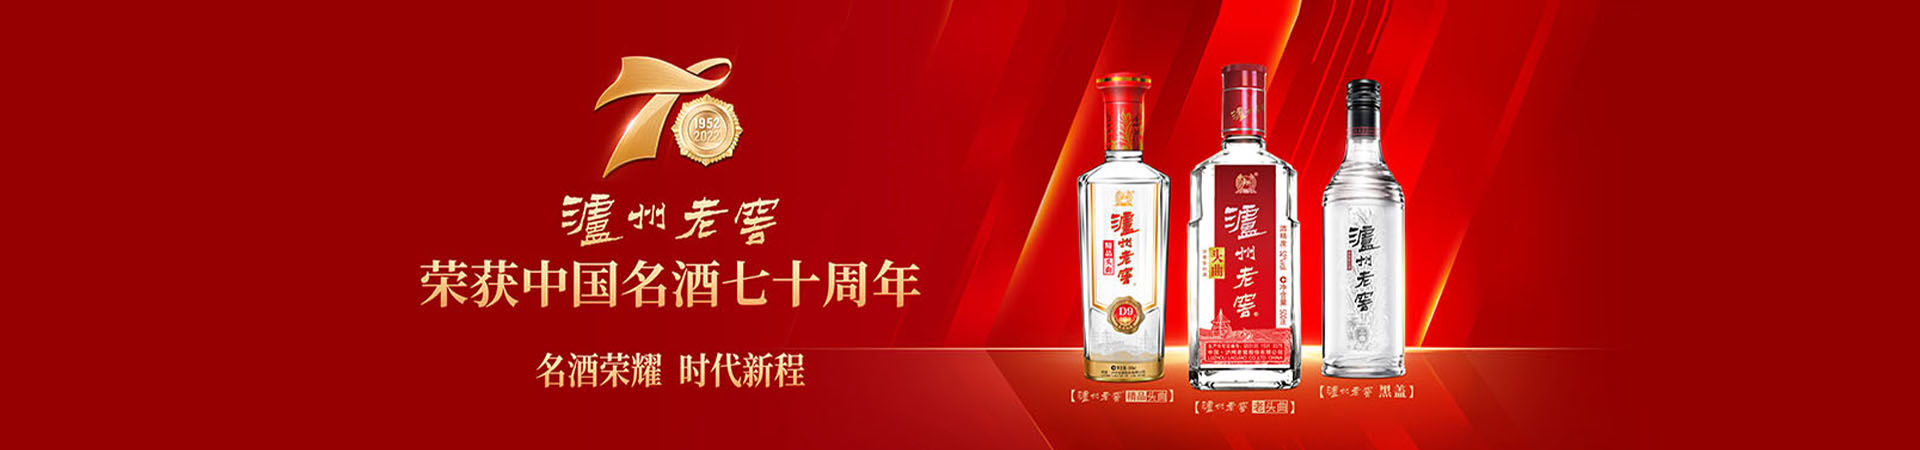 泸州老窖荣获中国名酒七十周年